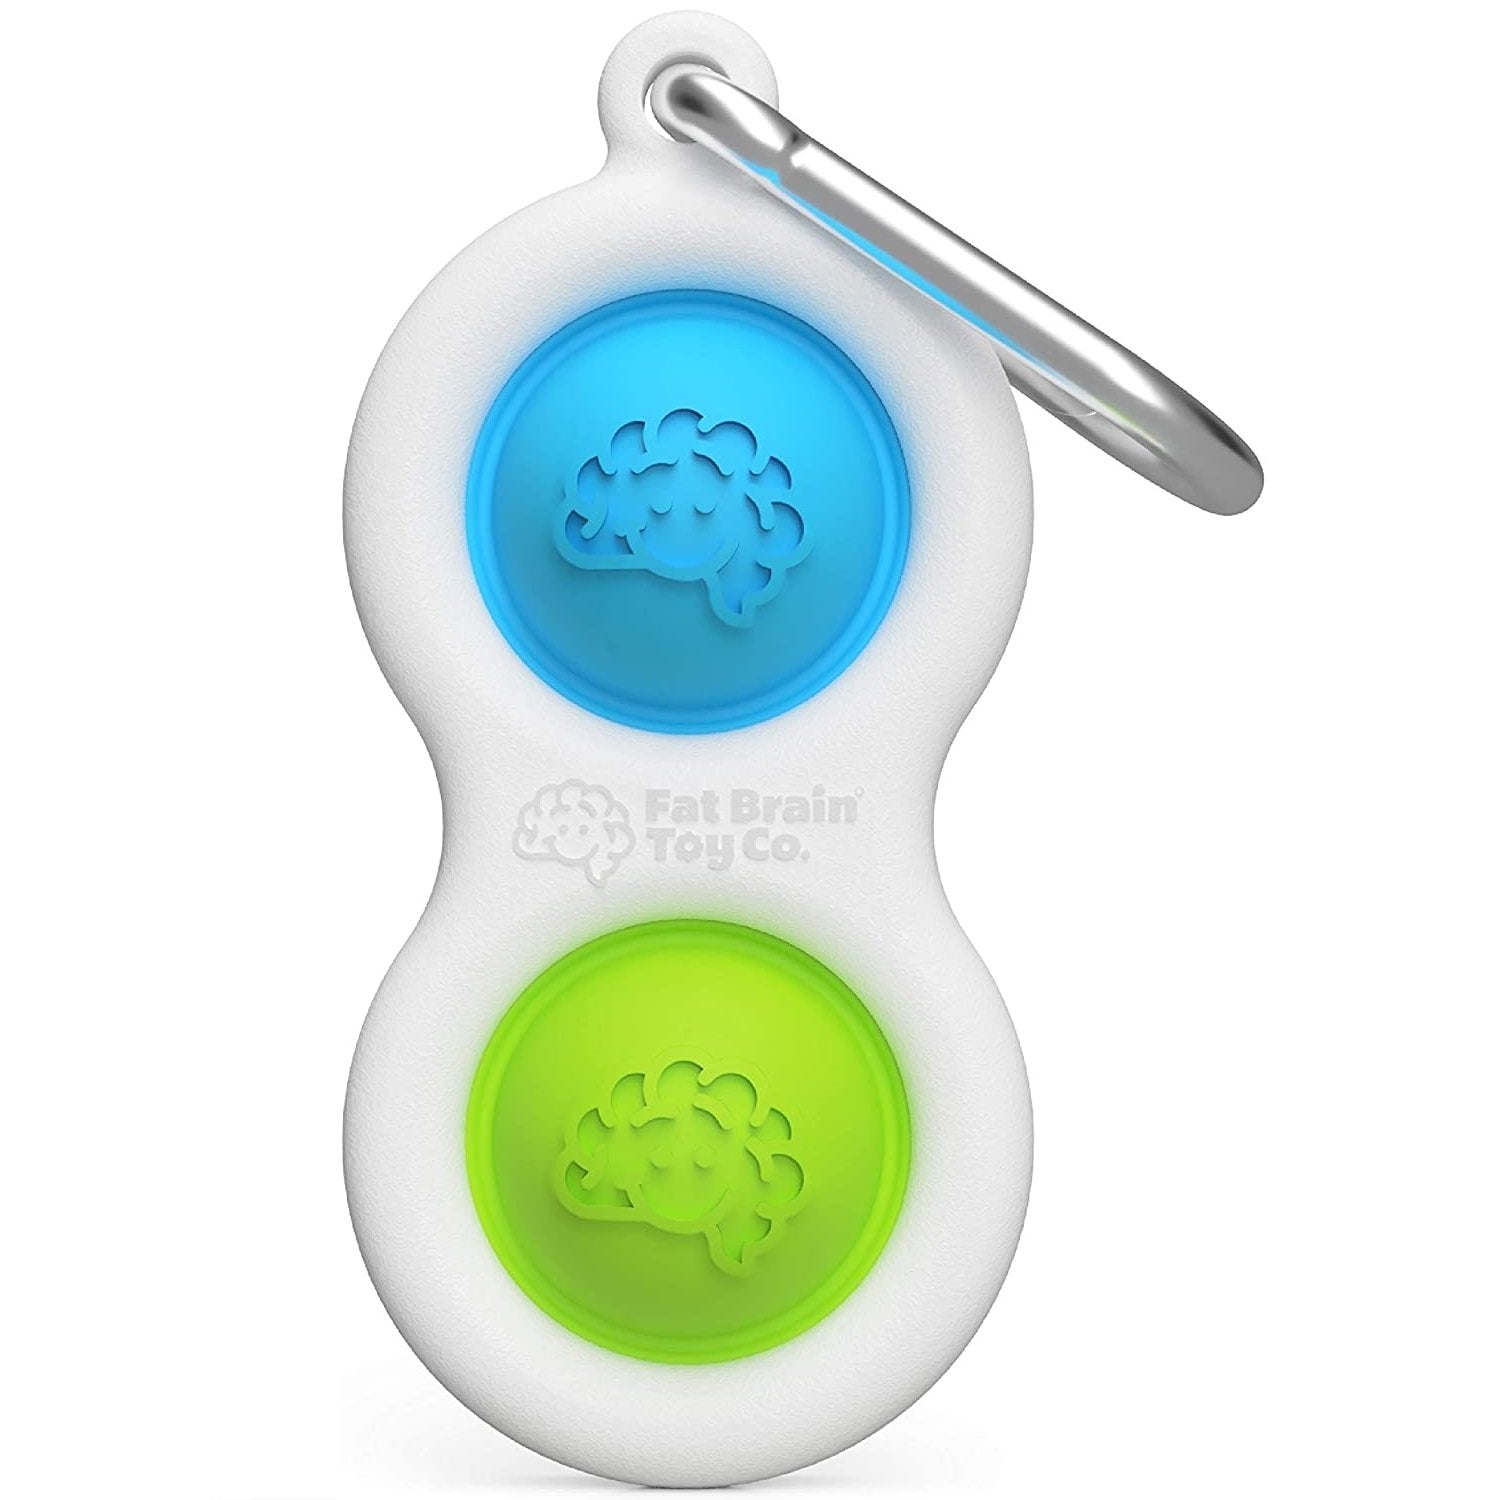 50% OFF Push Bubble Fidget Toy